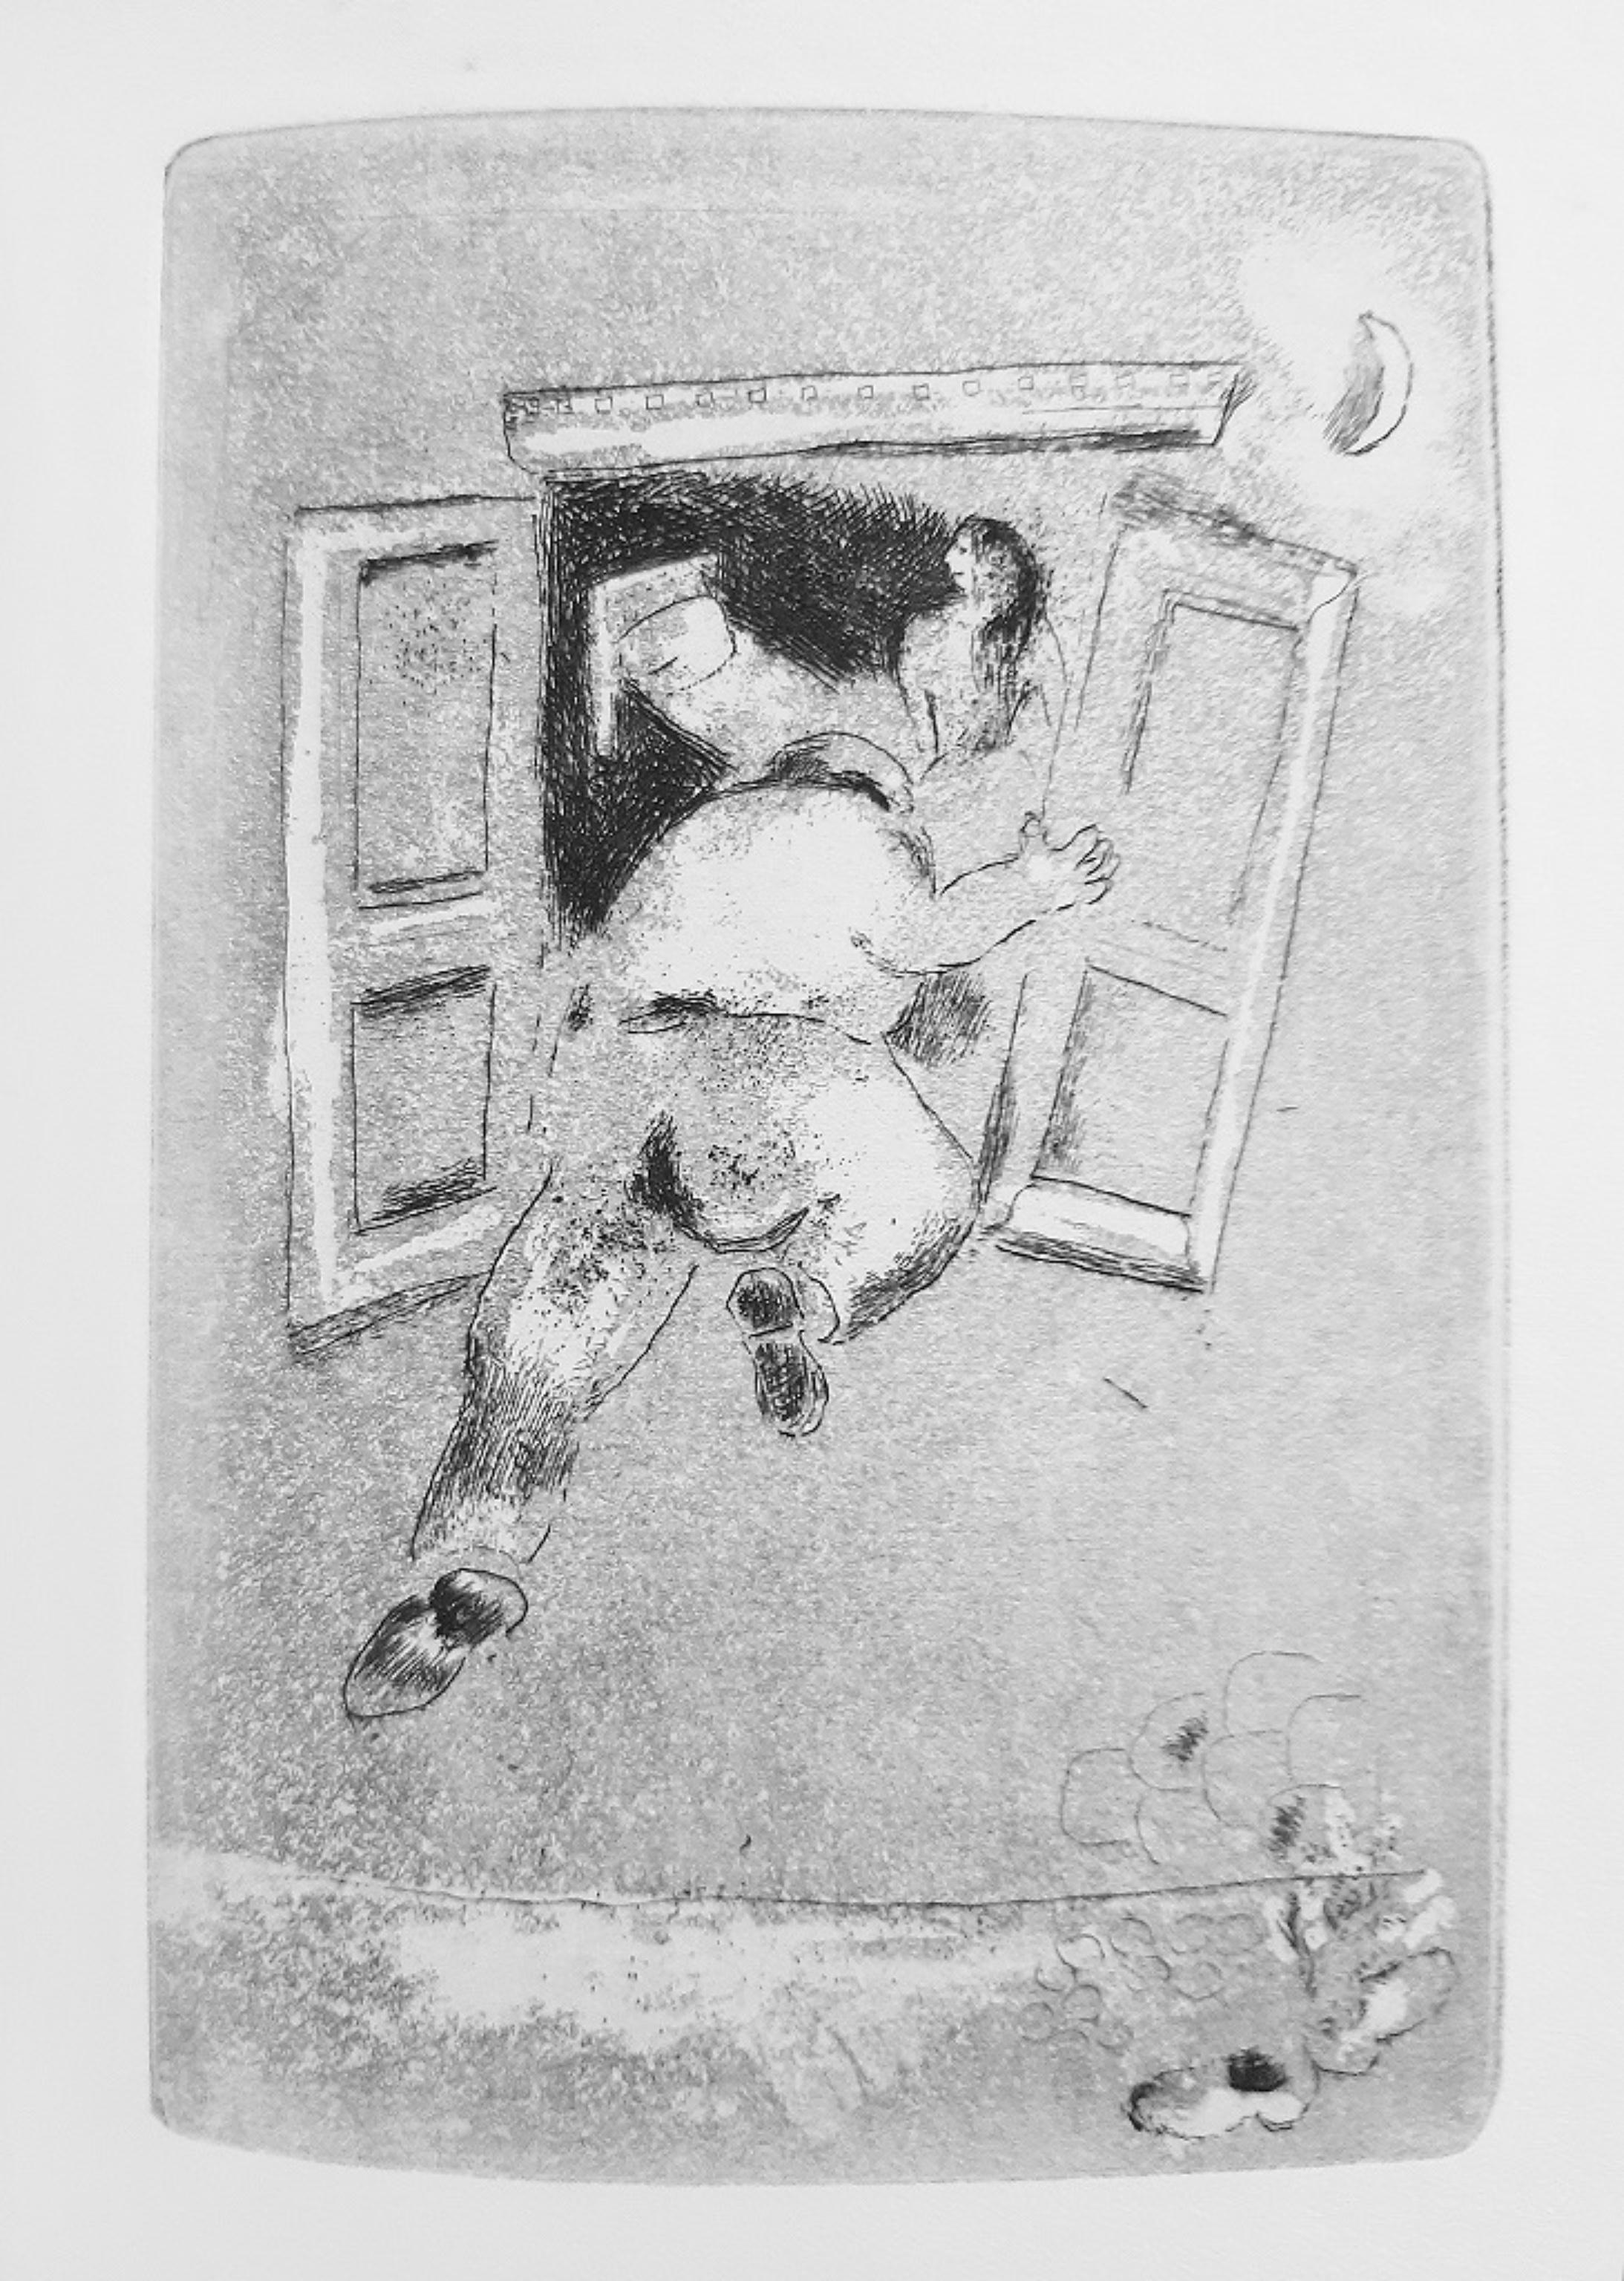 Maternité est un livre original de style moderne et rare écrit par Marcel Arland (Varennes-sur-Amance, 1899 - Saint-Sauveur-sur-École, 1986) et illustré par Marc Chagall (Lëzna, 1887 - Saint-Paul-de-Vence, 1985) en 1926.

Édition originale, publiée